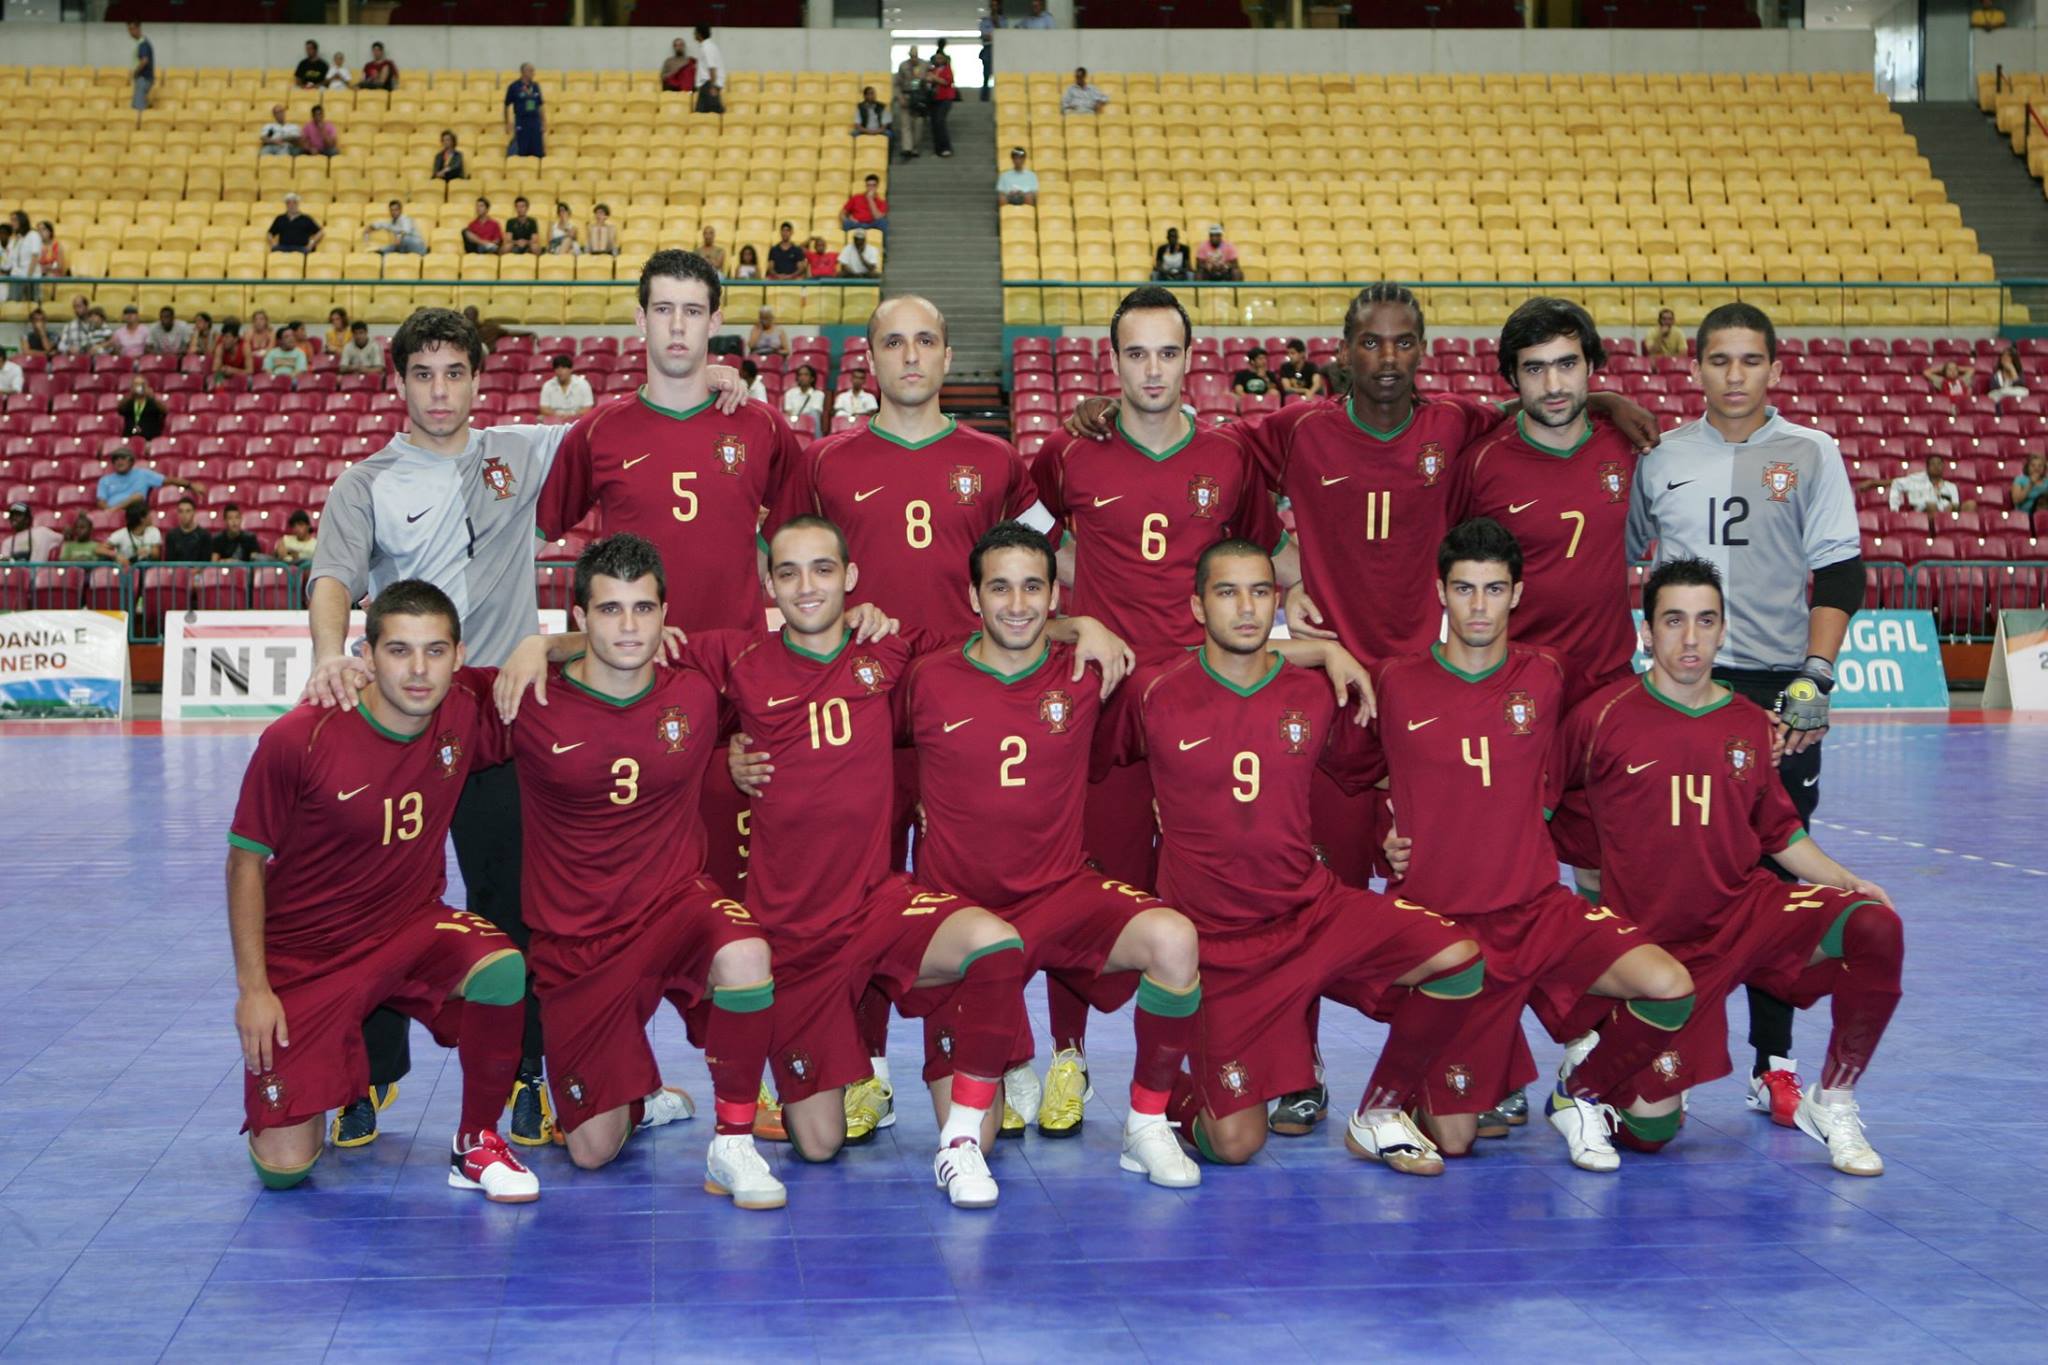 Equipa que representou Portugal nos Jogos da Lusofonia, e de que Amílcar fez parte (2009)